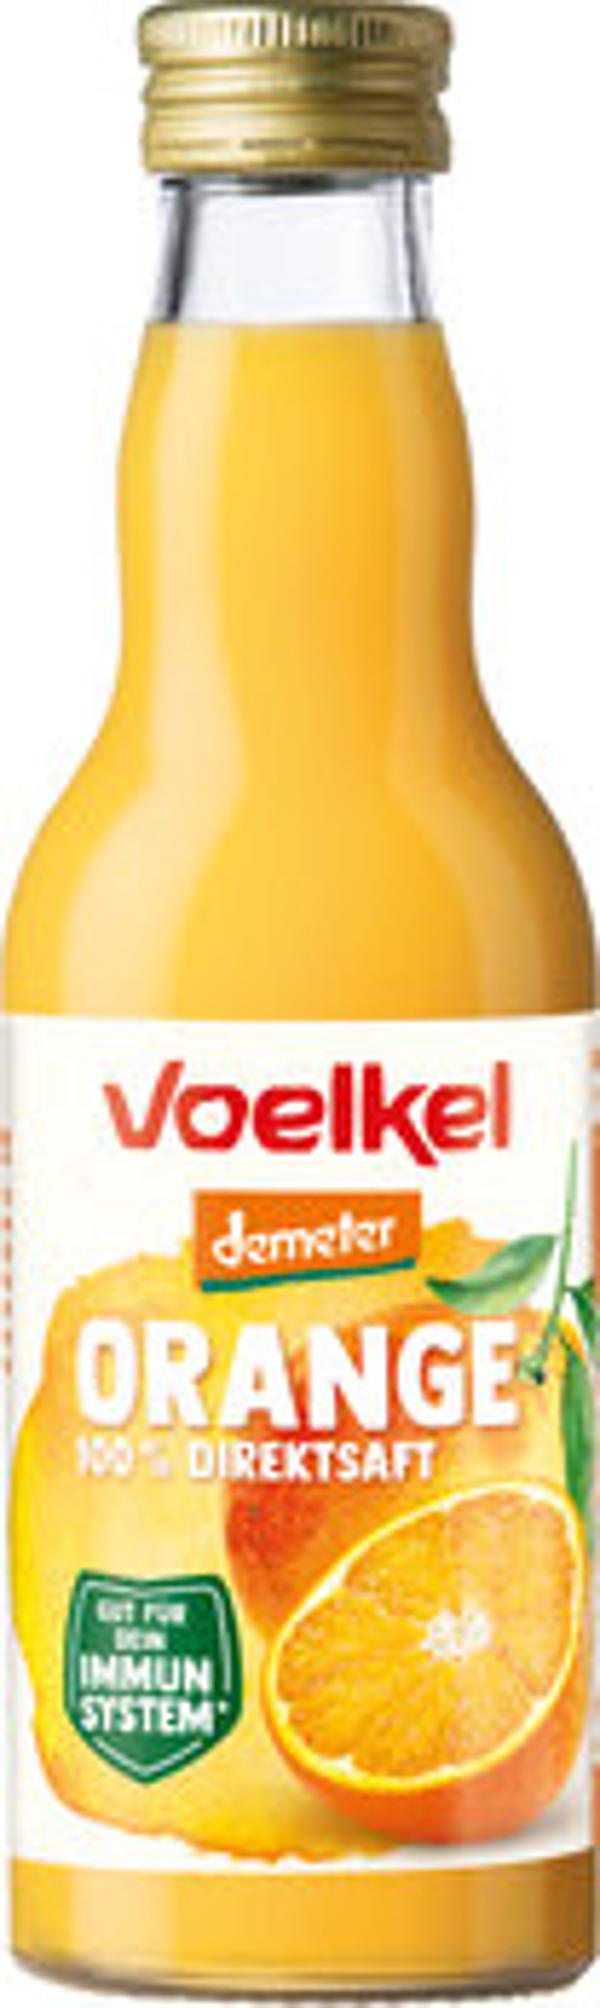 Produktfoto zu Voelkel Orangensaft 0,2l